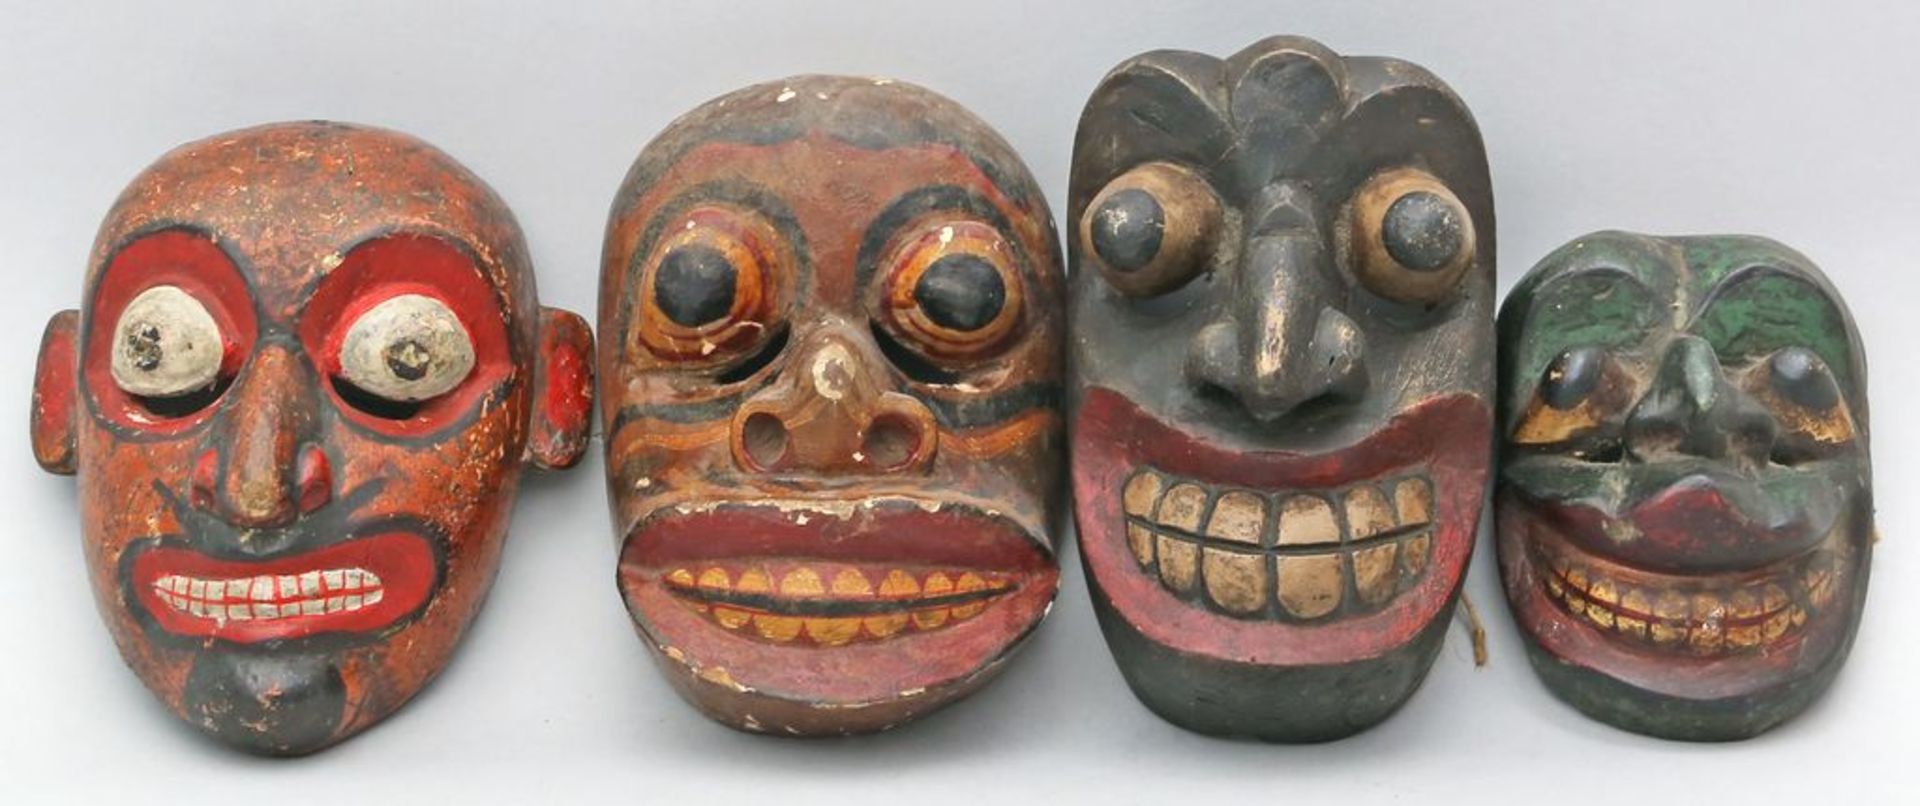 4 div. Masken. Holz, geschnitzt und farbig gefasst. Java oder Indonesien. H. 16 bis 22